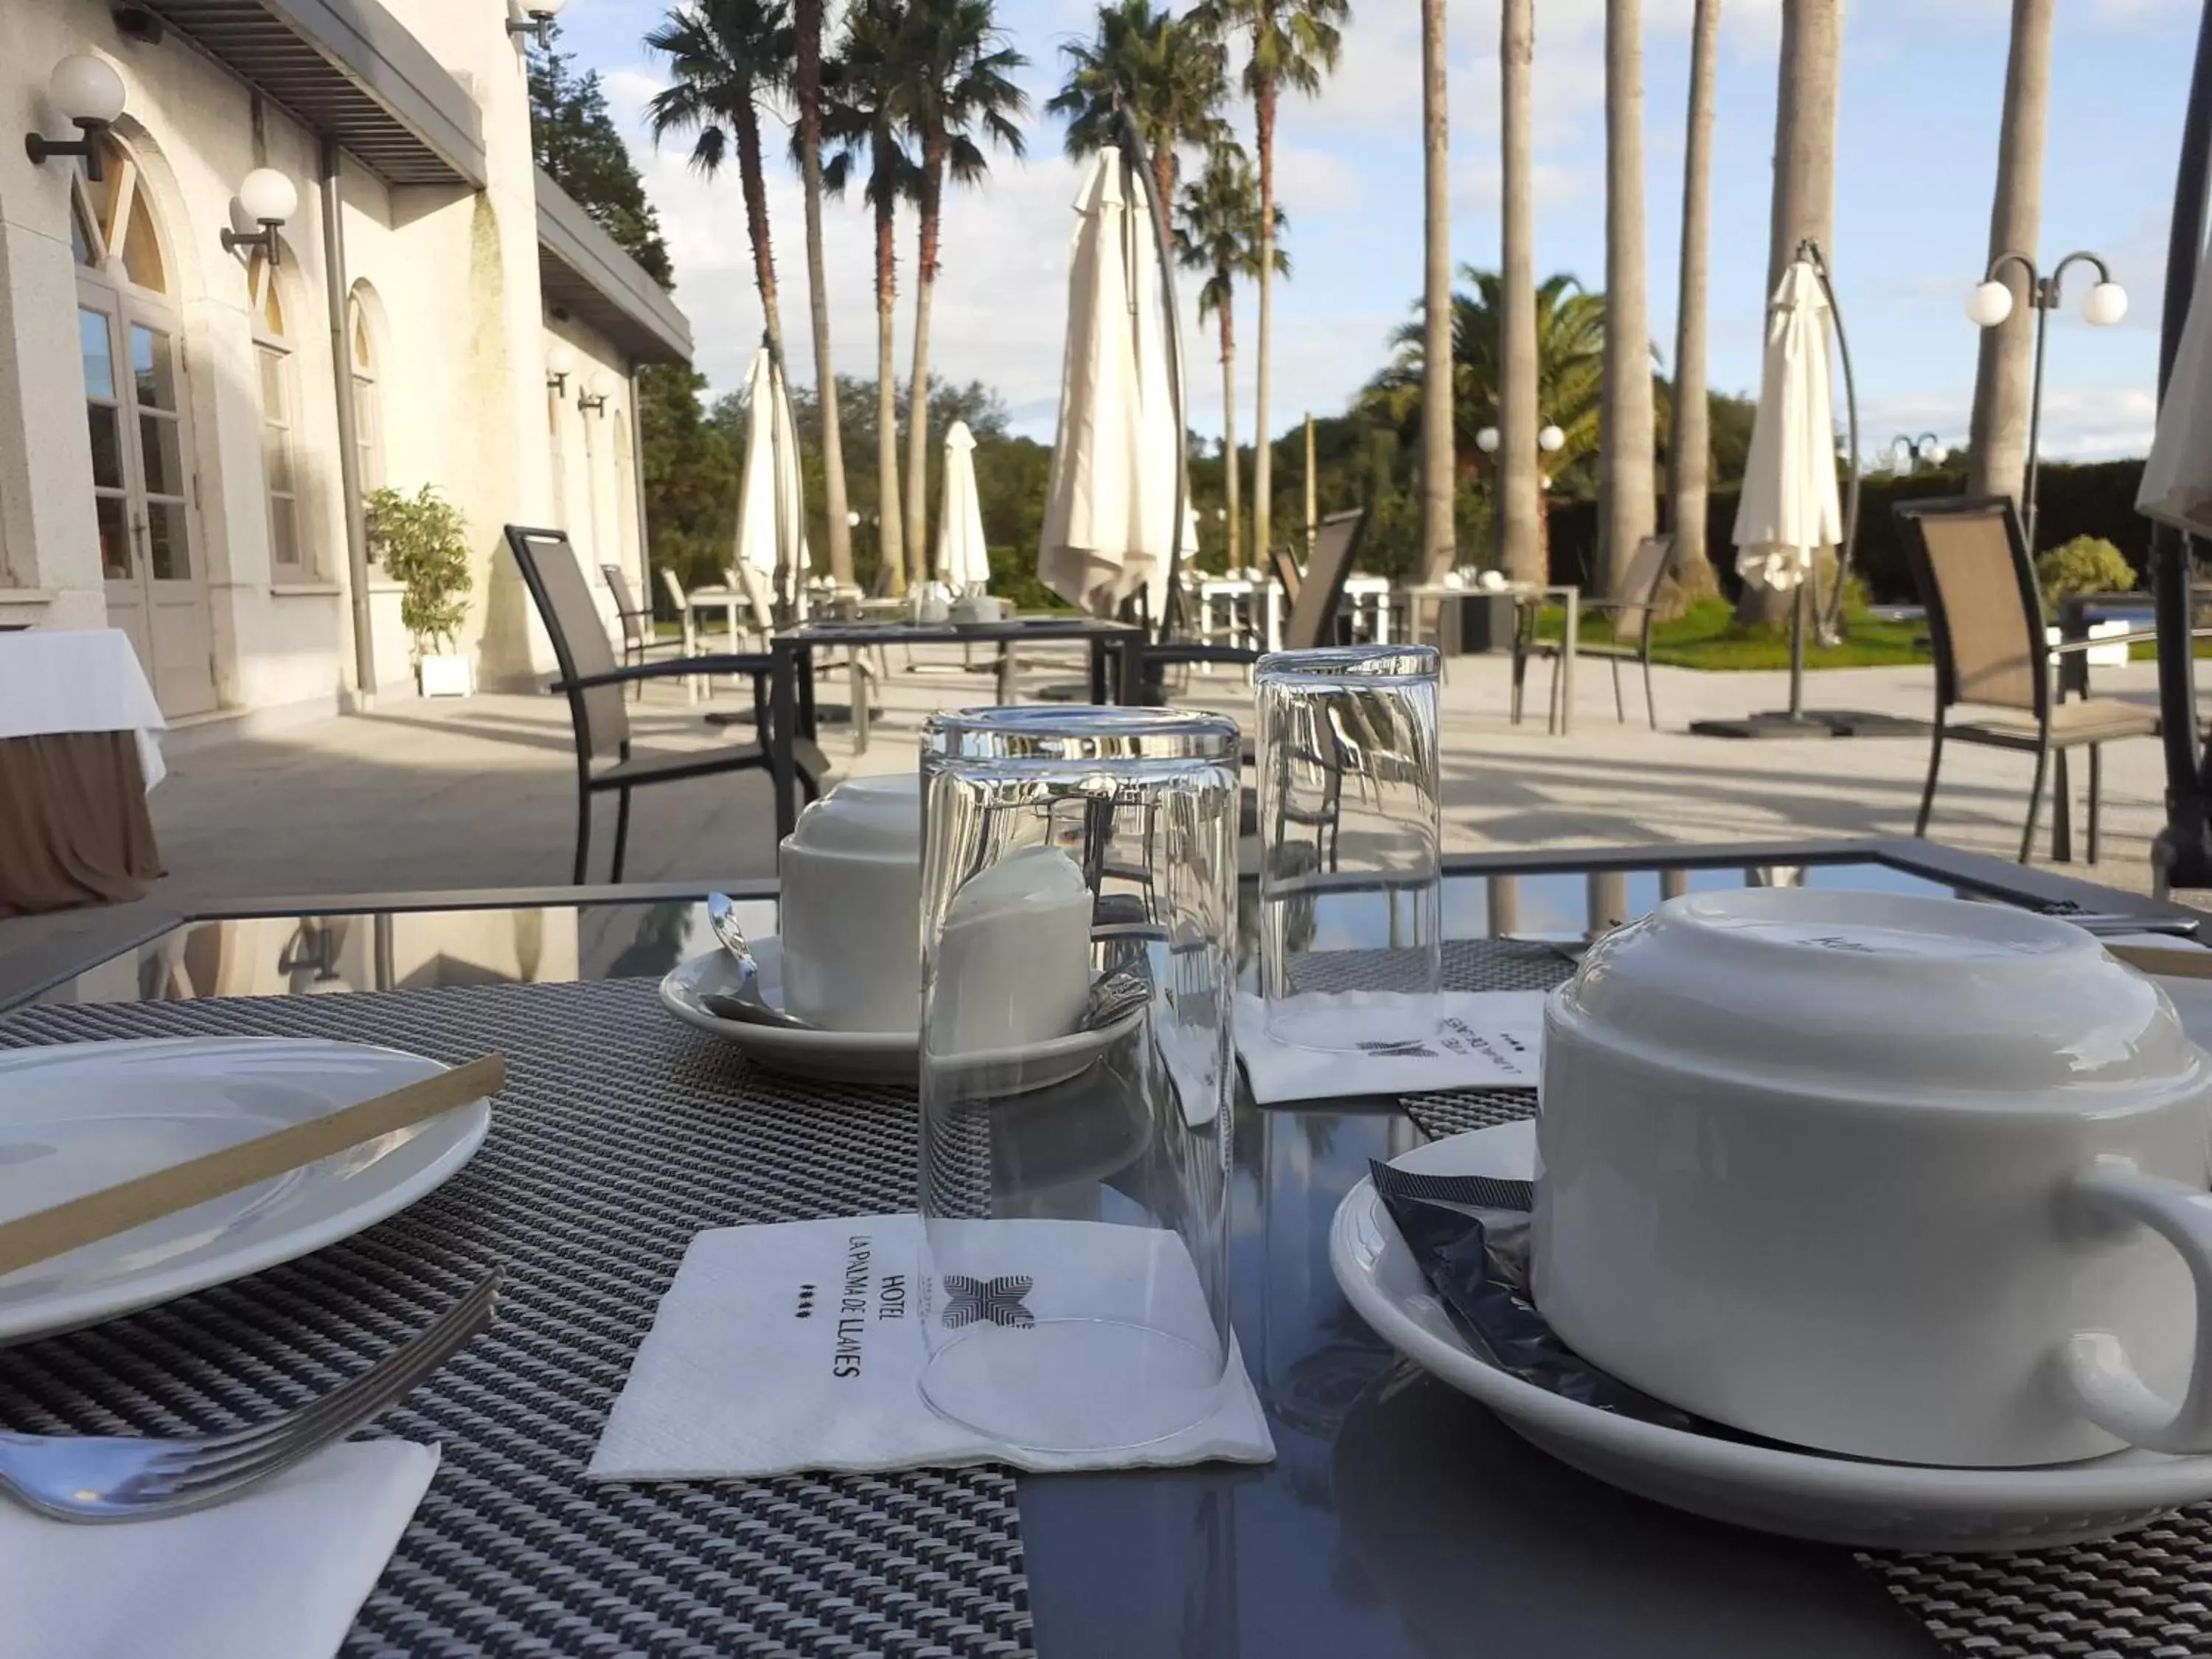 Buffet breakfast, Restaurant/Places to Eat in Hotel La Palma de Llanes